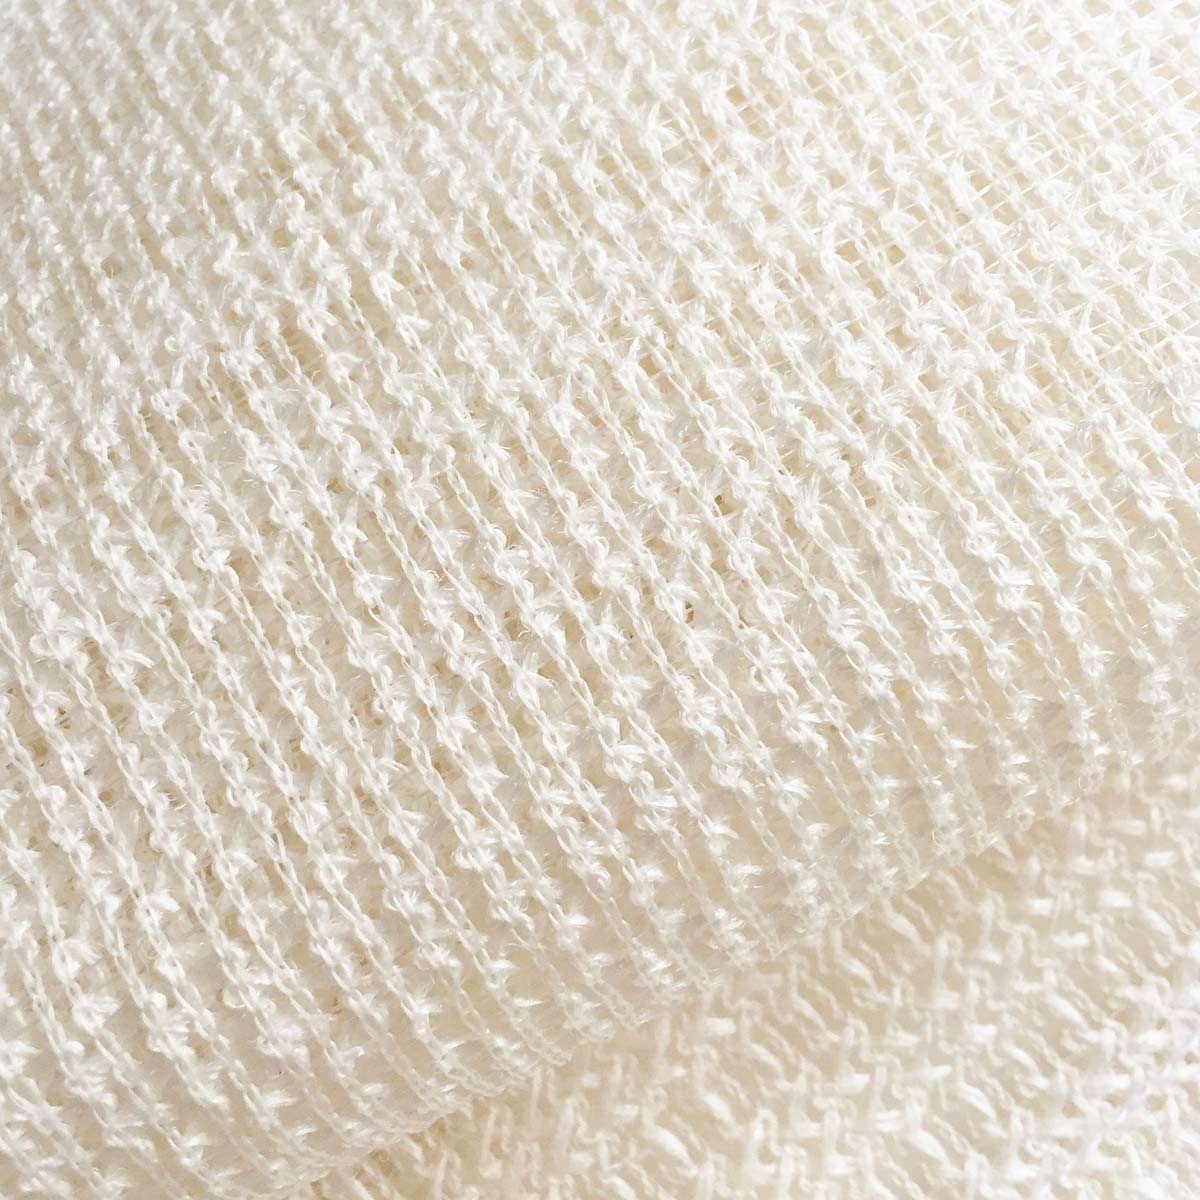 Alternate image of Chidoriya Raw Silk Woven Net Wash Cloth 11 x 40  inches Cloth